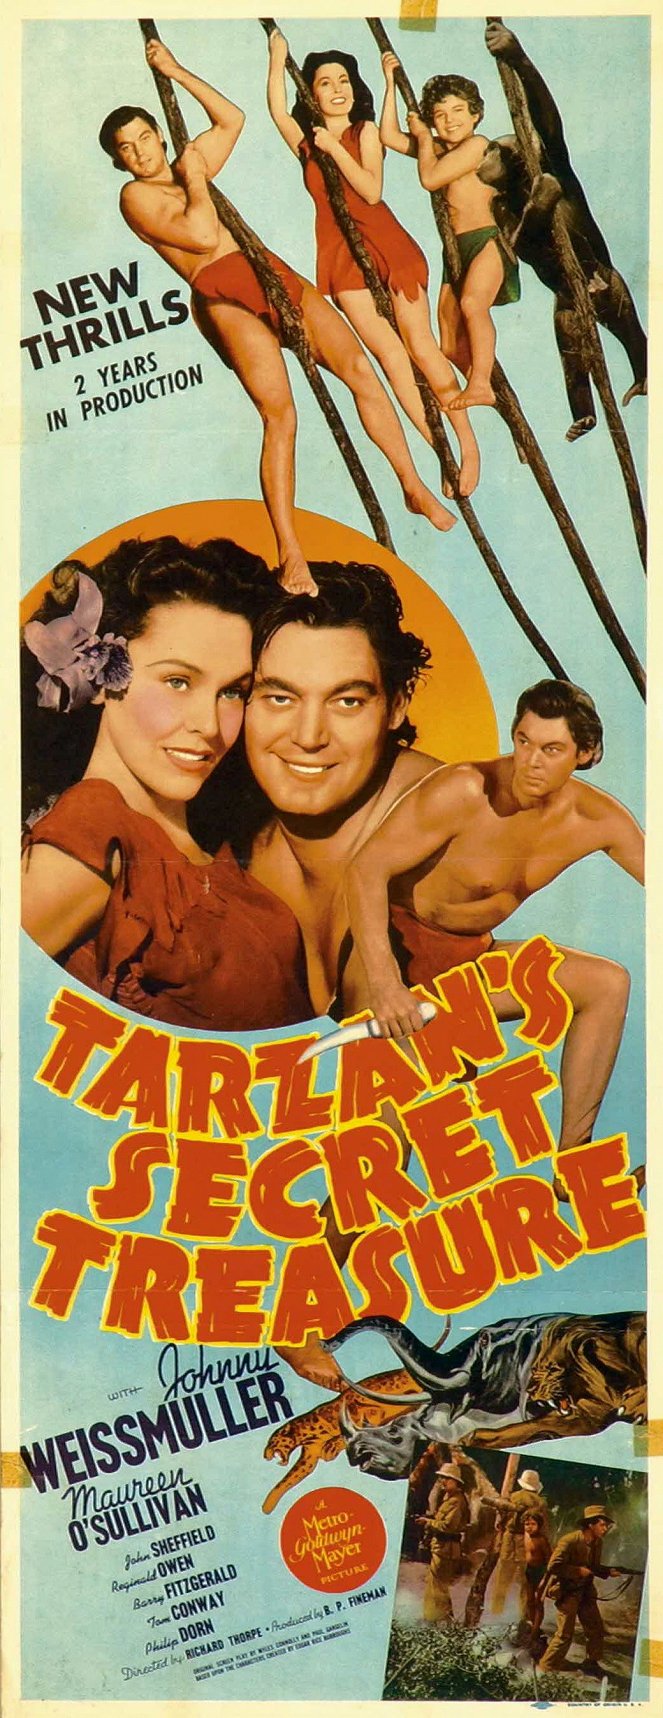 Tarzan's Secret Treasure - Cartazes